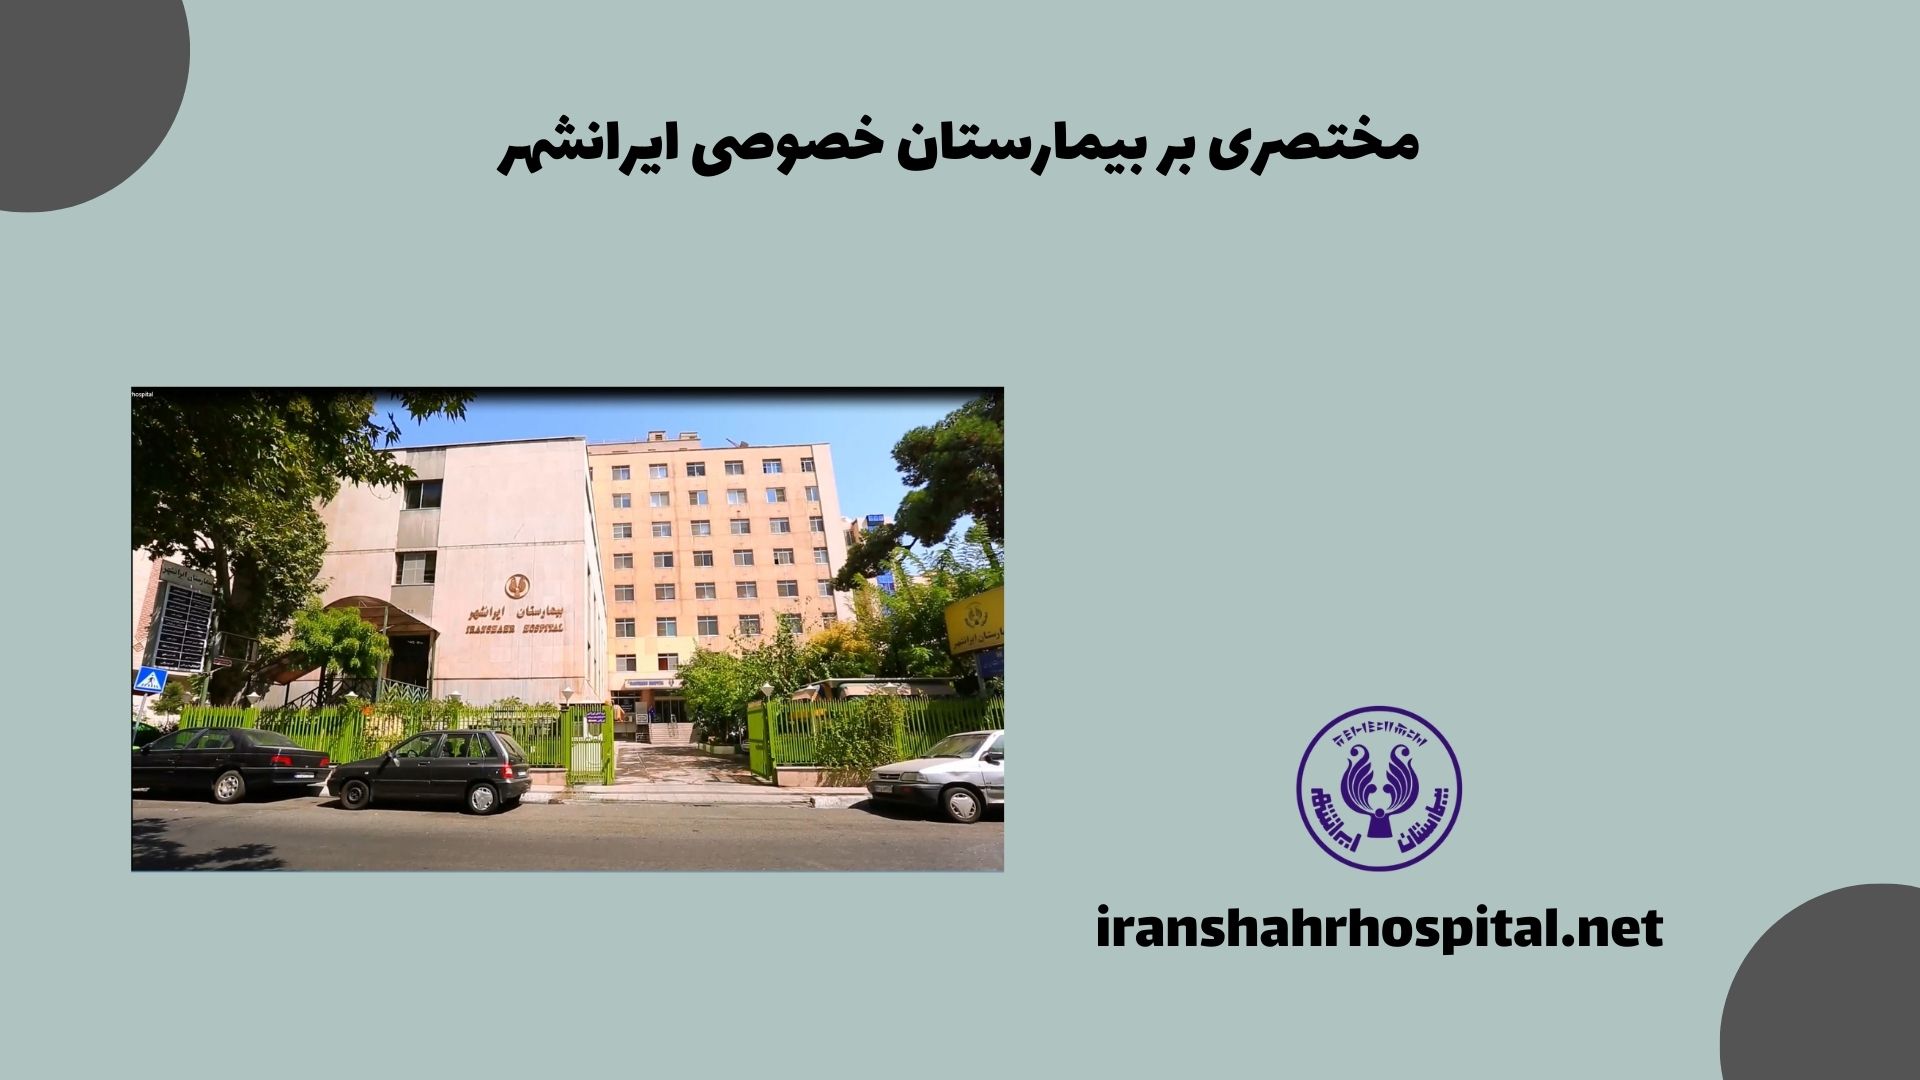 مختصری بر بیمارستان خصوصی ایرانشهر